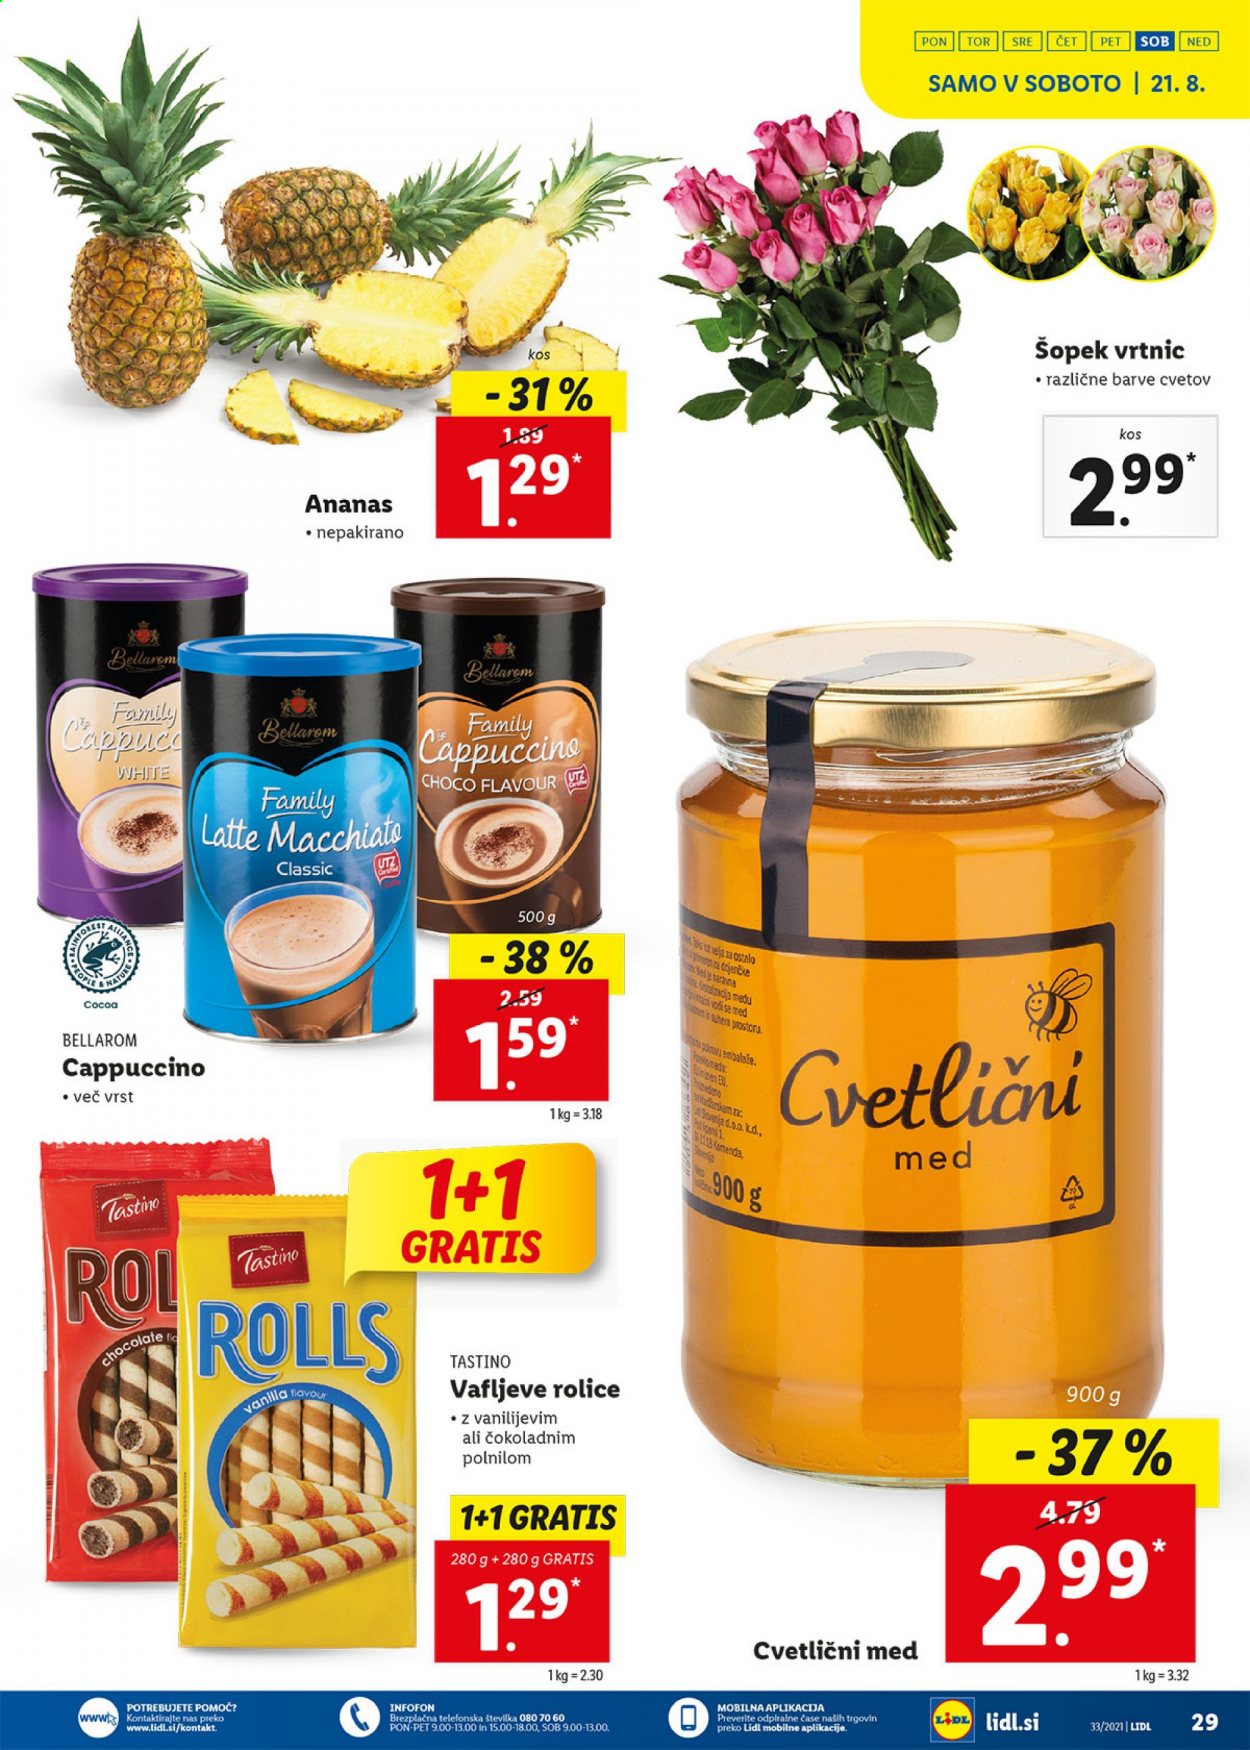 thumbnail - Lidl katalog - 19.8.2021 - 29.8.2021 - Ponudba izdelkov - Bellarom, ananas, cvetlični med. Stran 29.